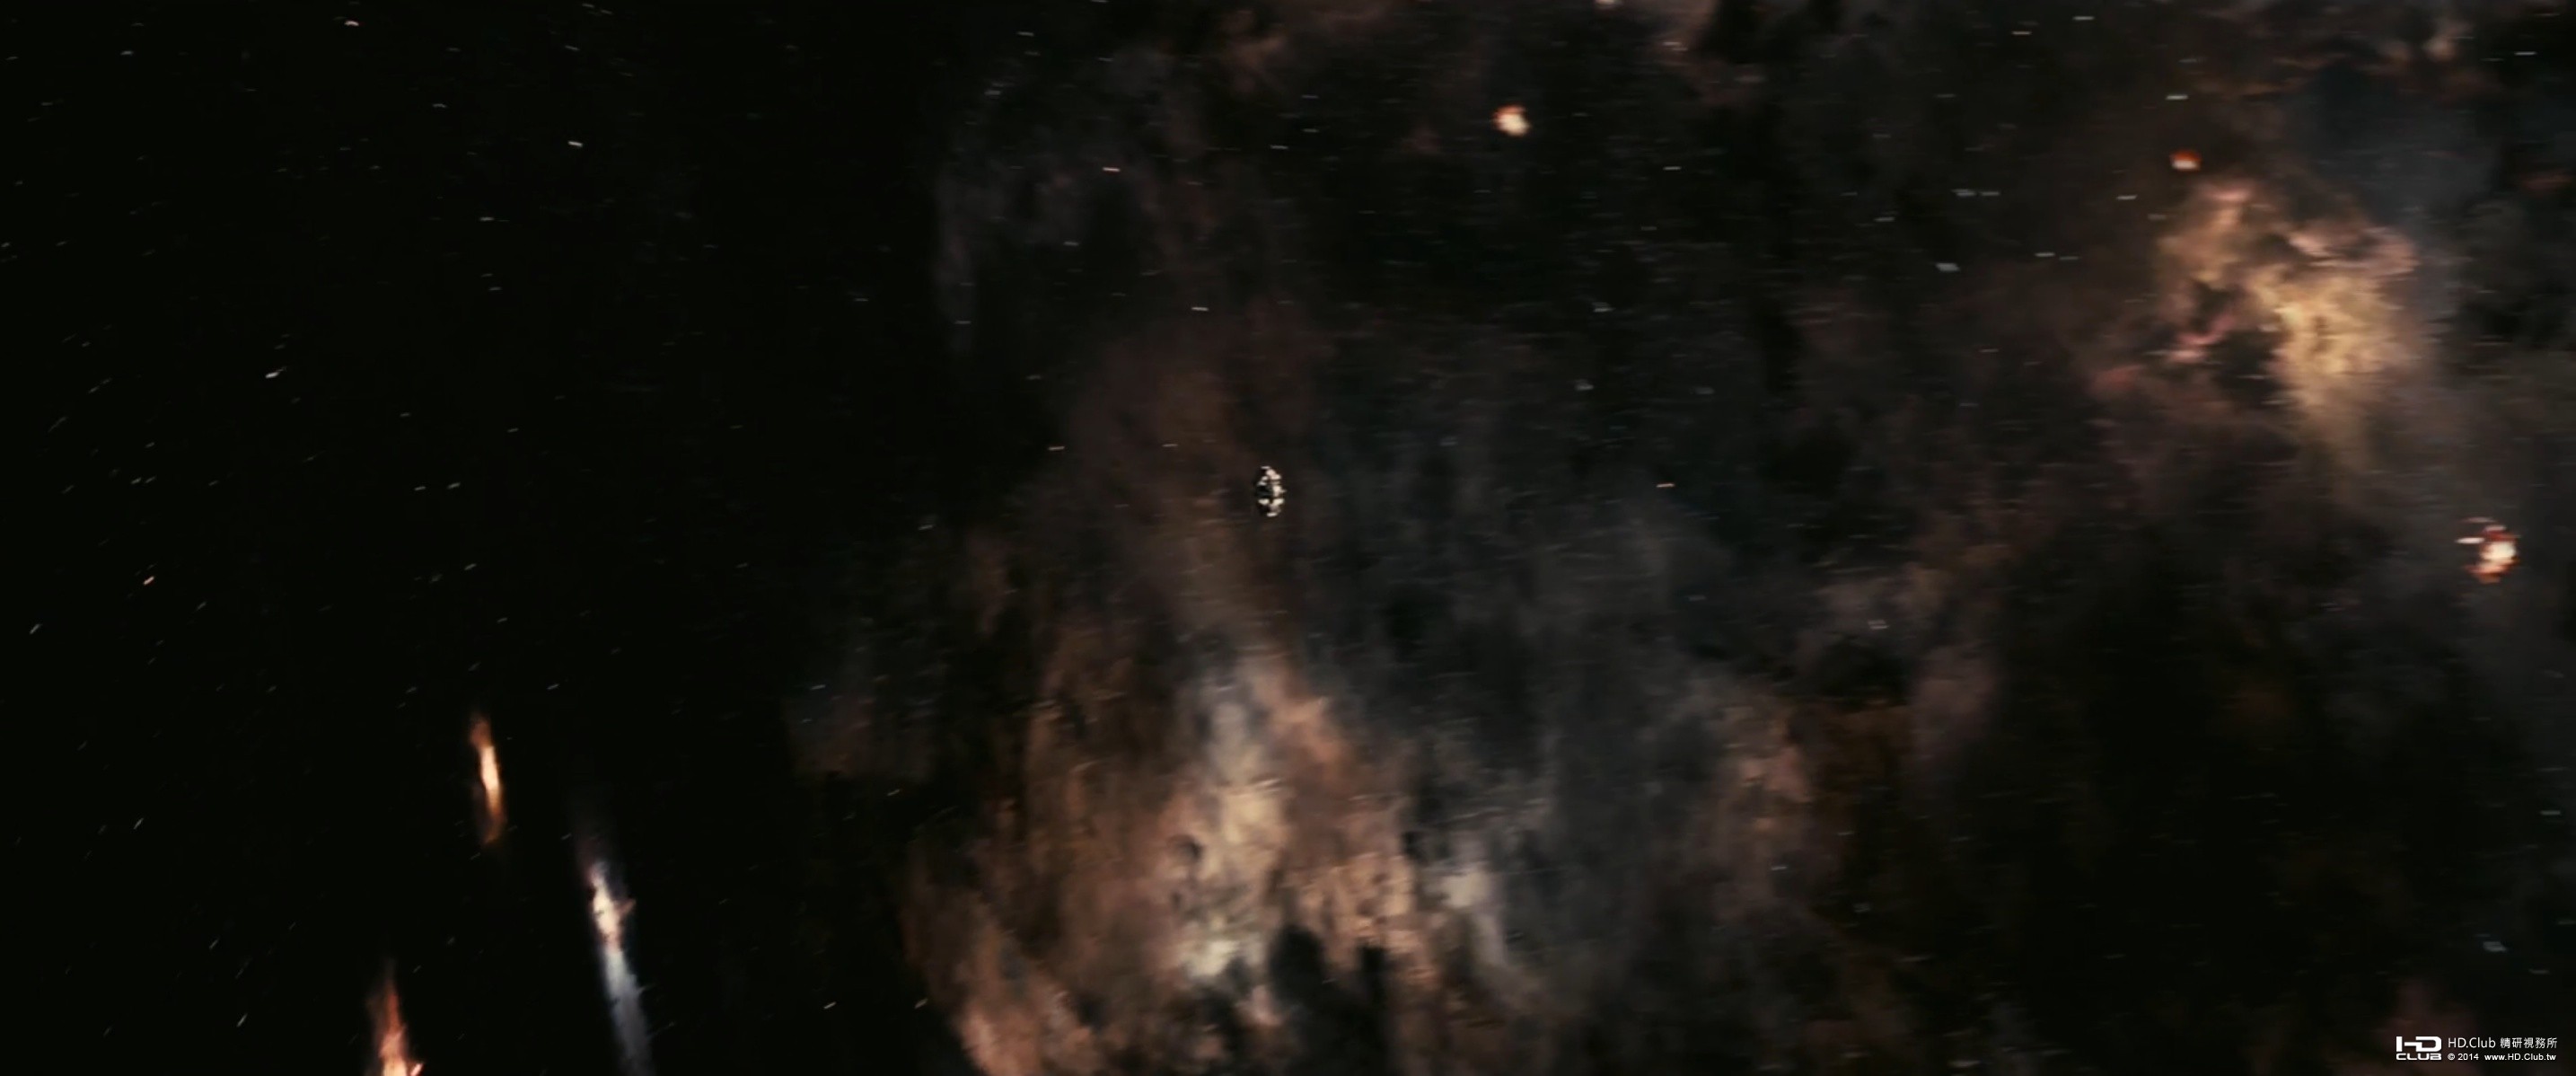 interstellar-19.jpg